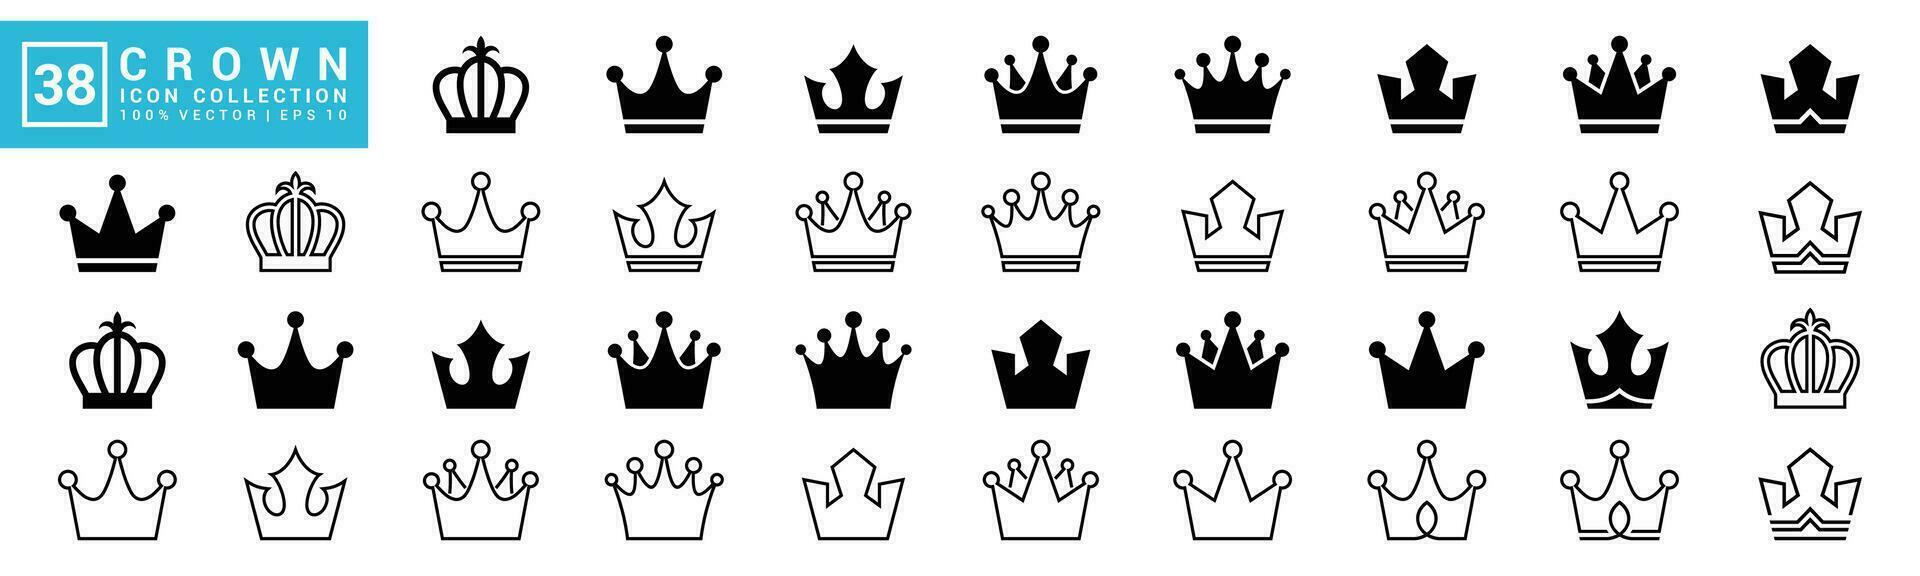 coleção do ícones coroa, rei, rainha, real, reino, editável e redimensionável eps 10. vetor